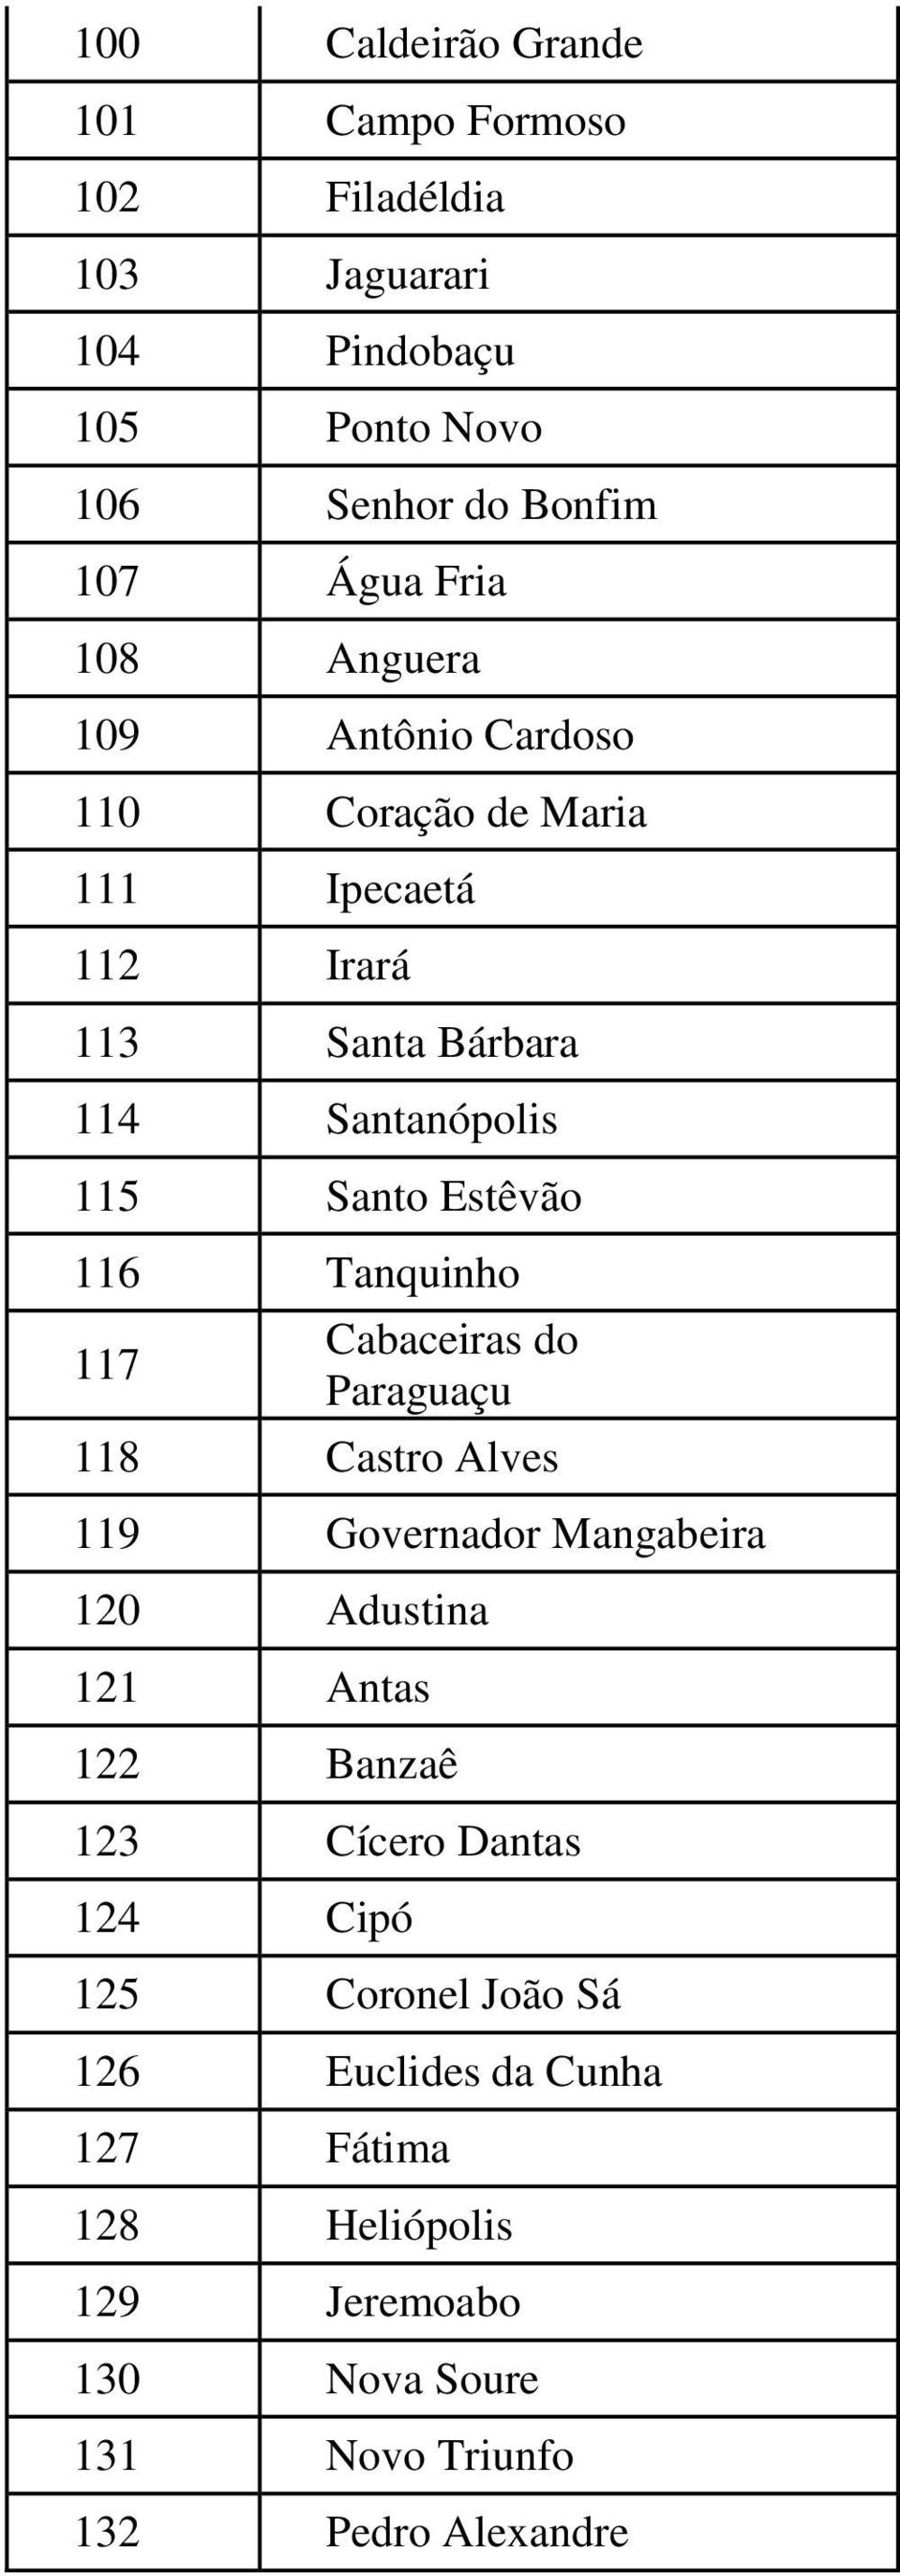 Tanquinho 117 Cabaceiras do Paraguaçu 118 Castro Alves 119 Governador Mangabeira 120 Adustina 121 Antas 122 Banzaê 123 Cícero Dantas